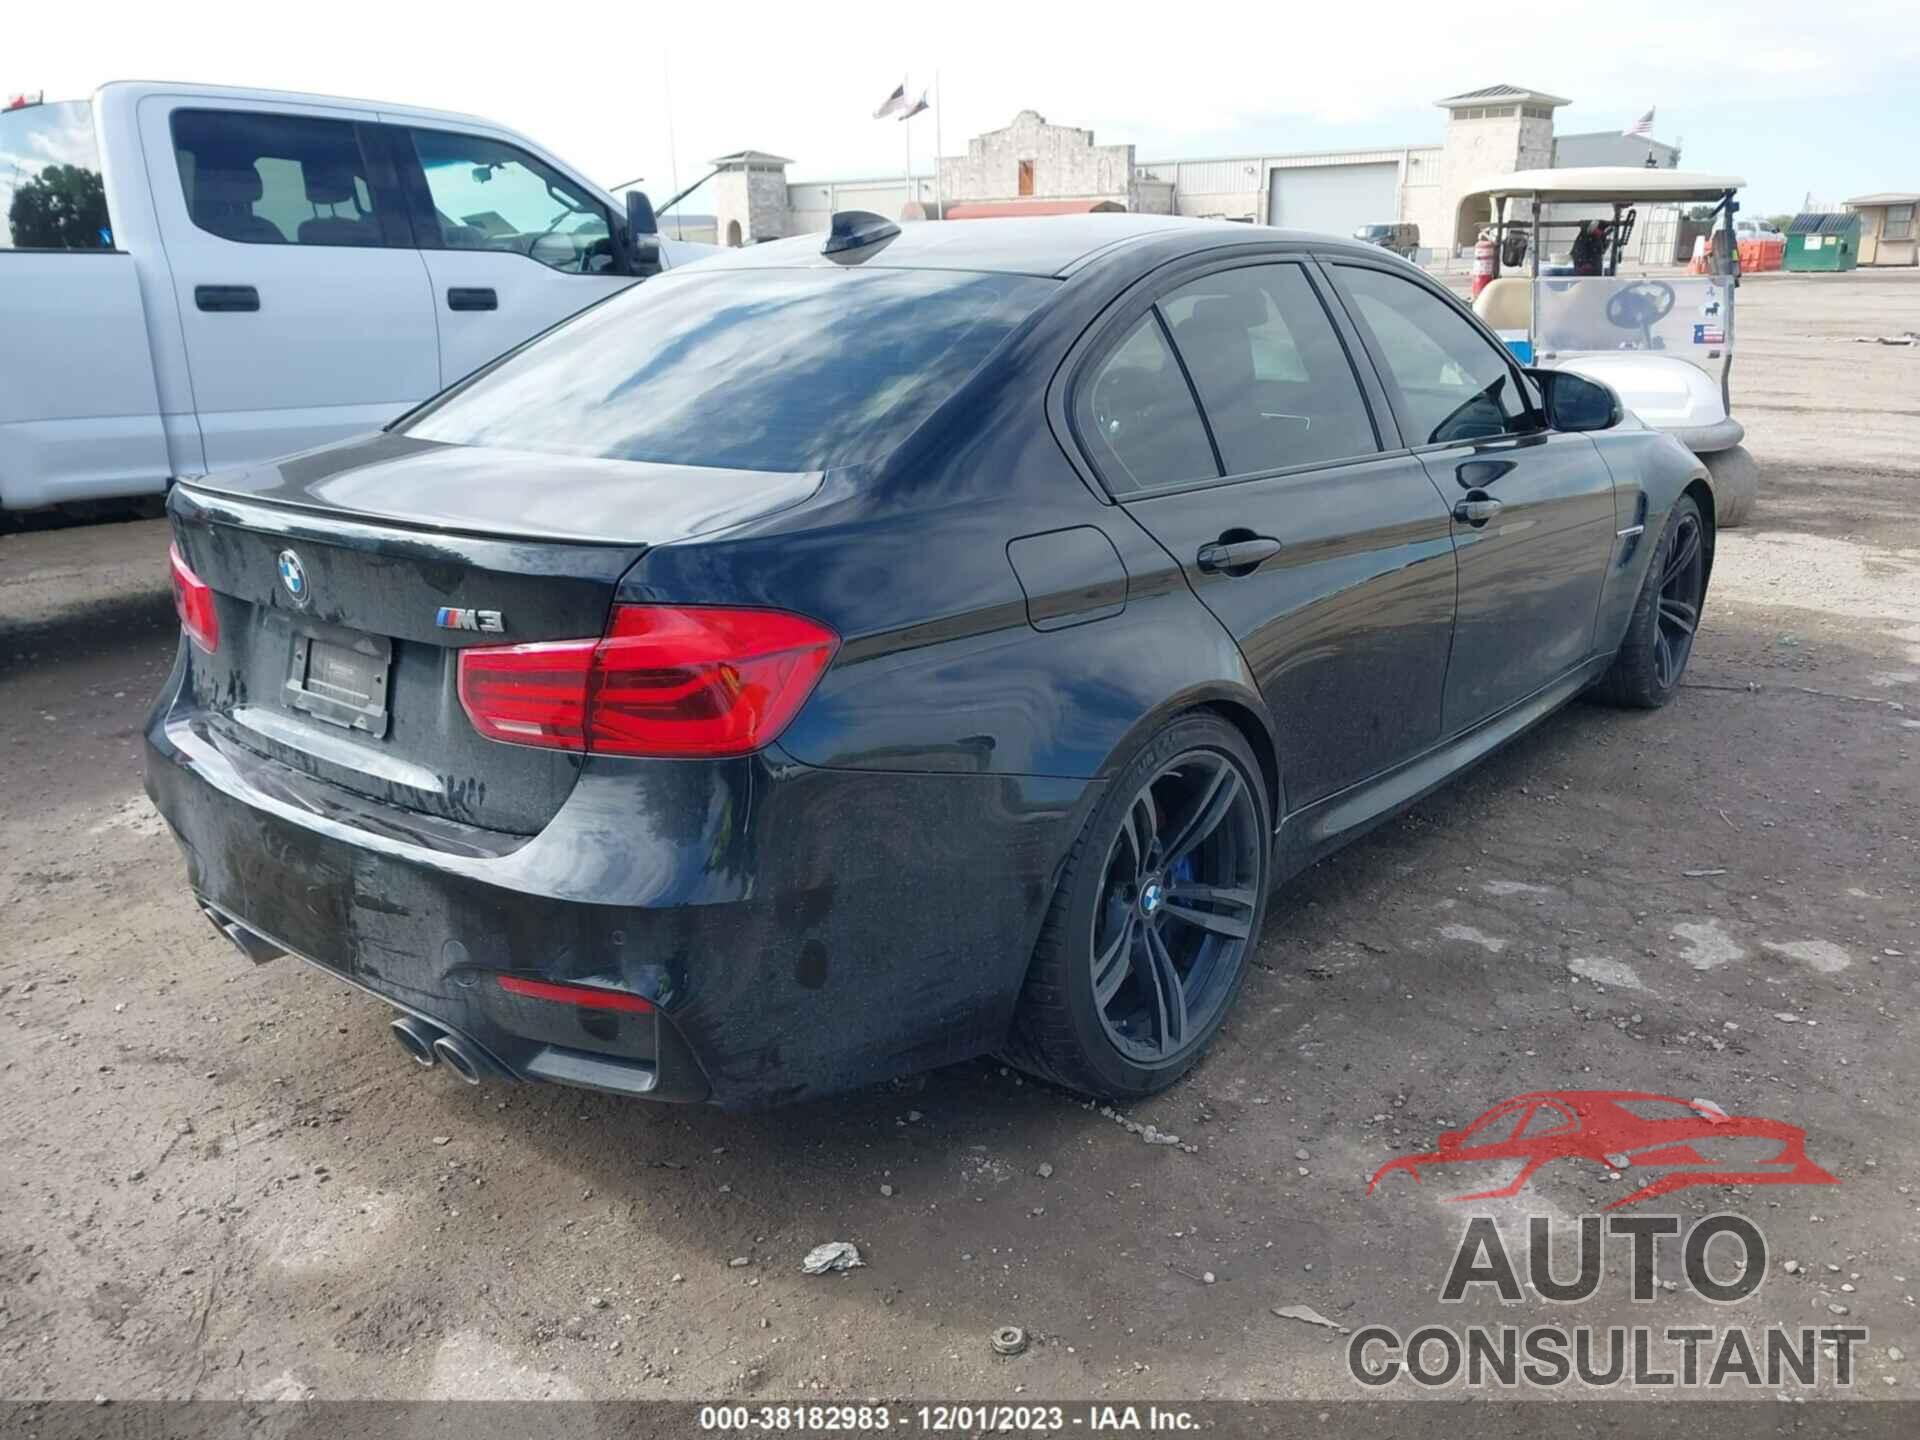 BMW M3 2018 - WBS8M9C52J5J78654